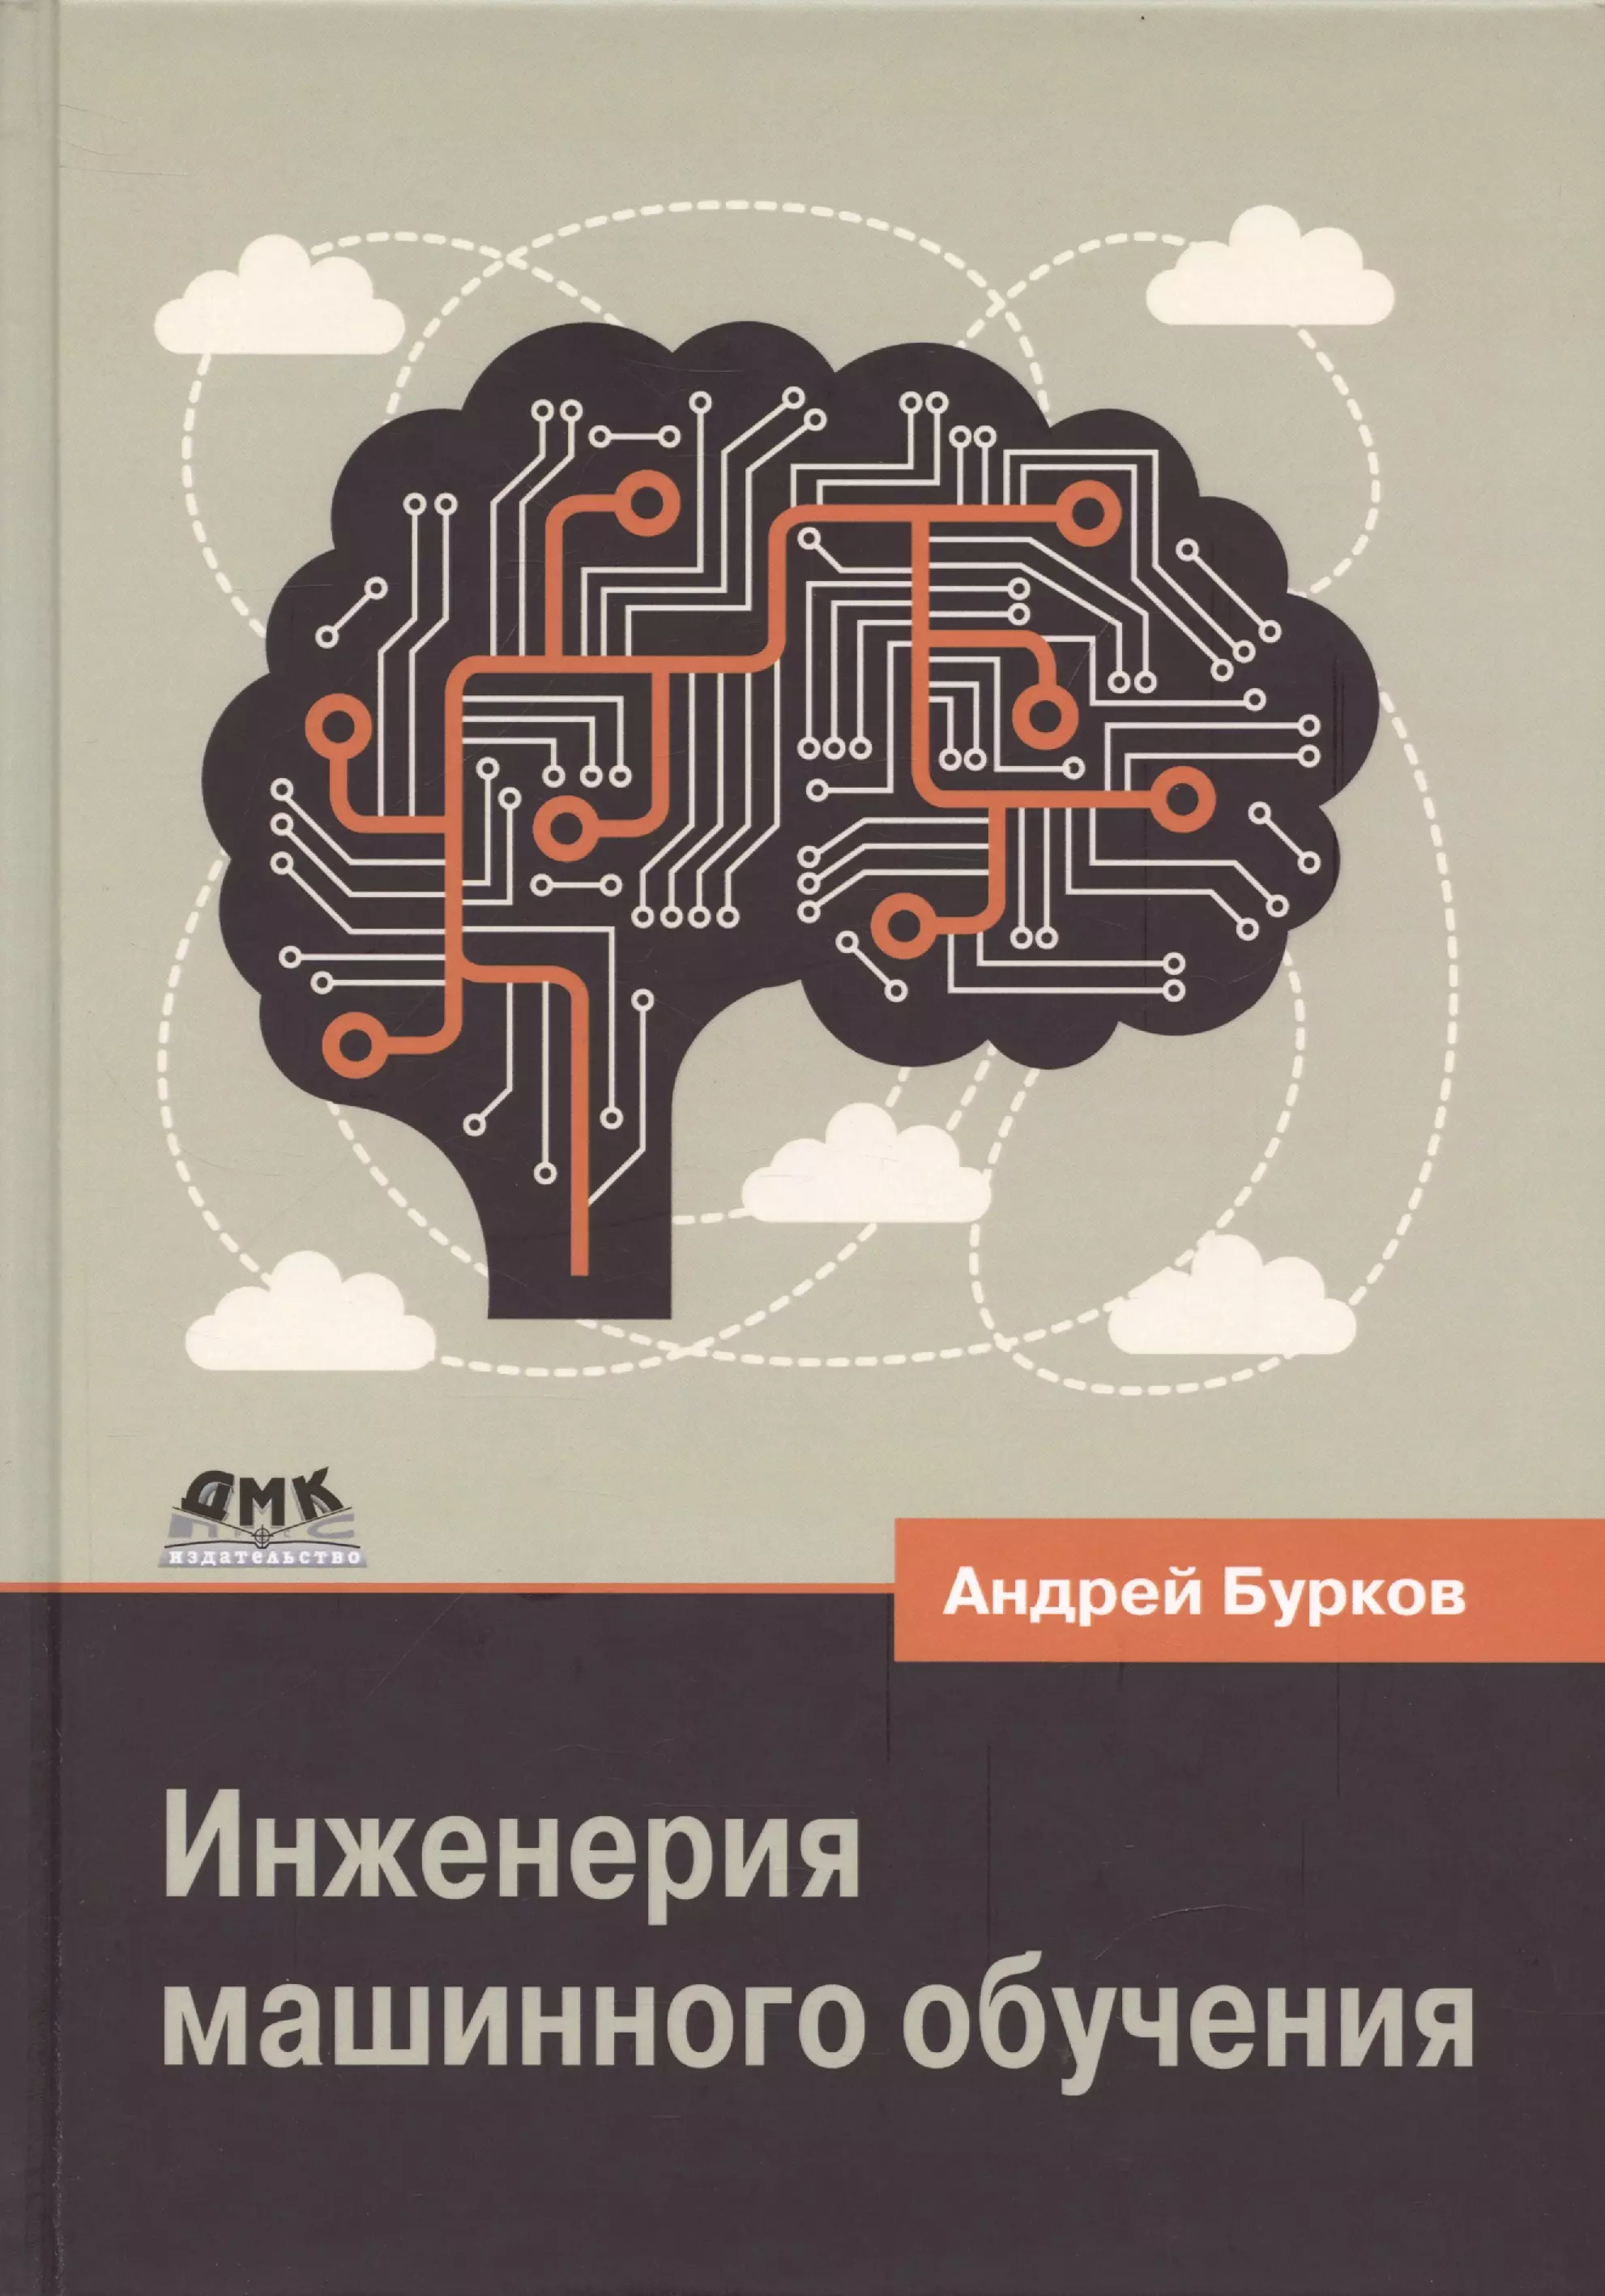 Бурков Андрей - Инженерия машинного обучения